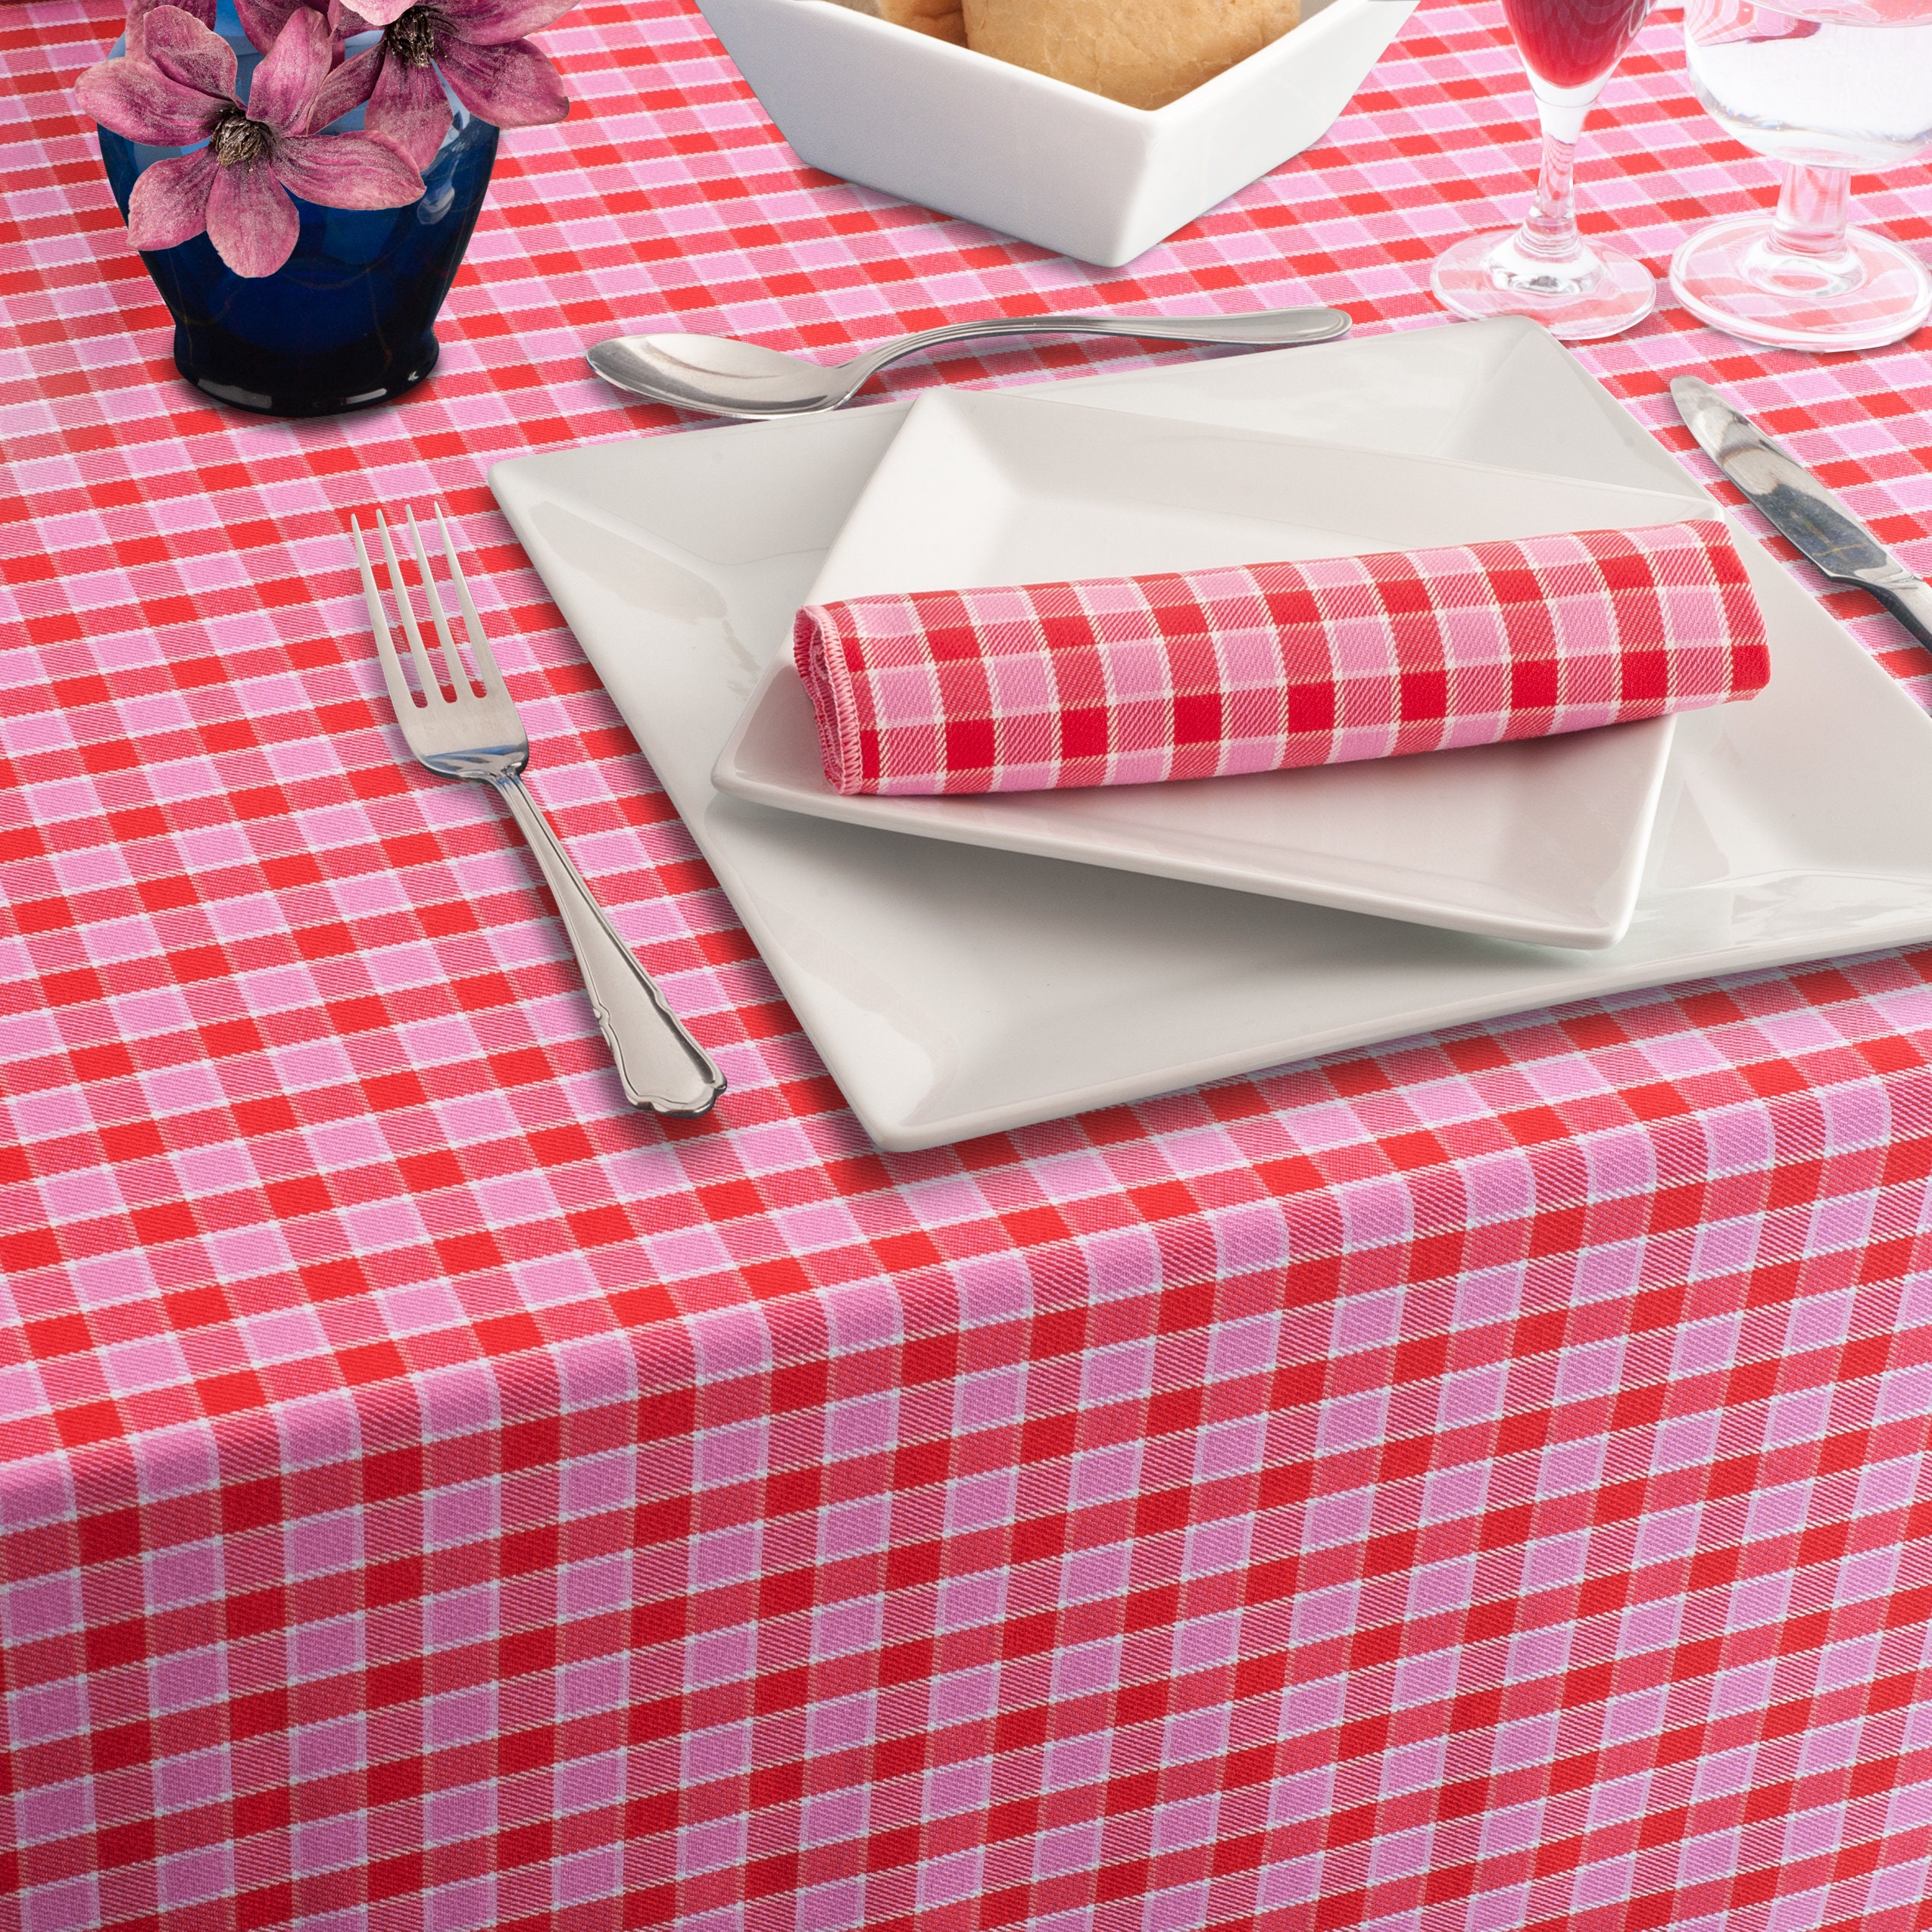 Les housses de sous-plat en tissu tartan rouge captivent la table